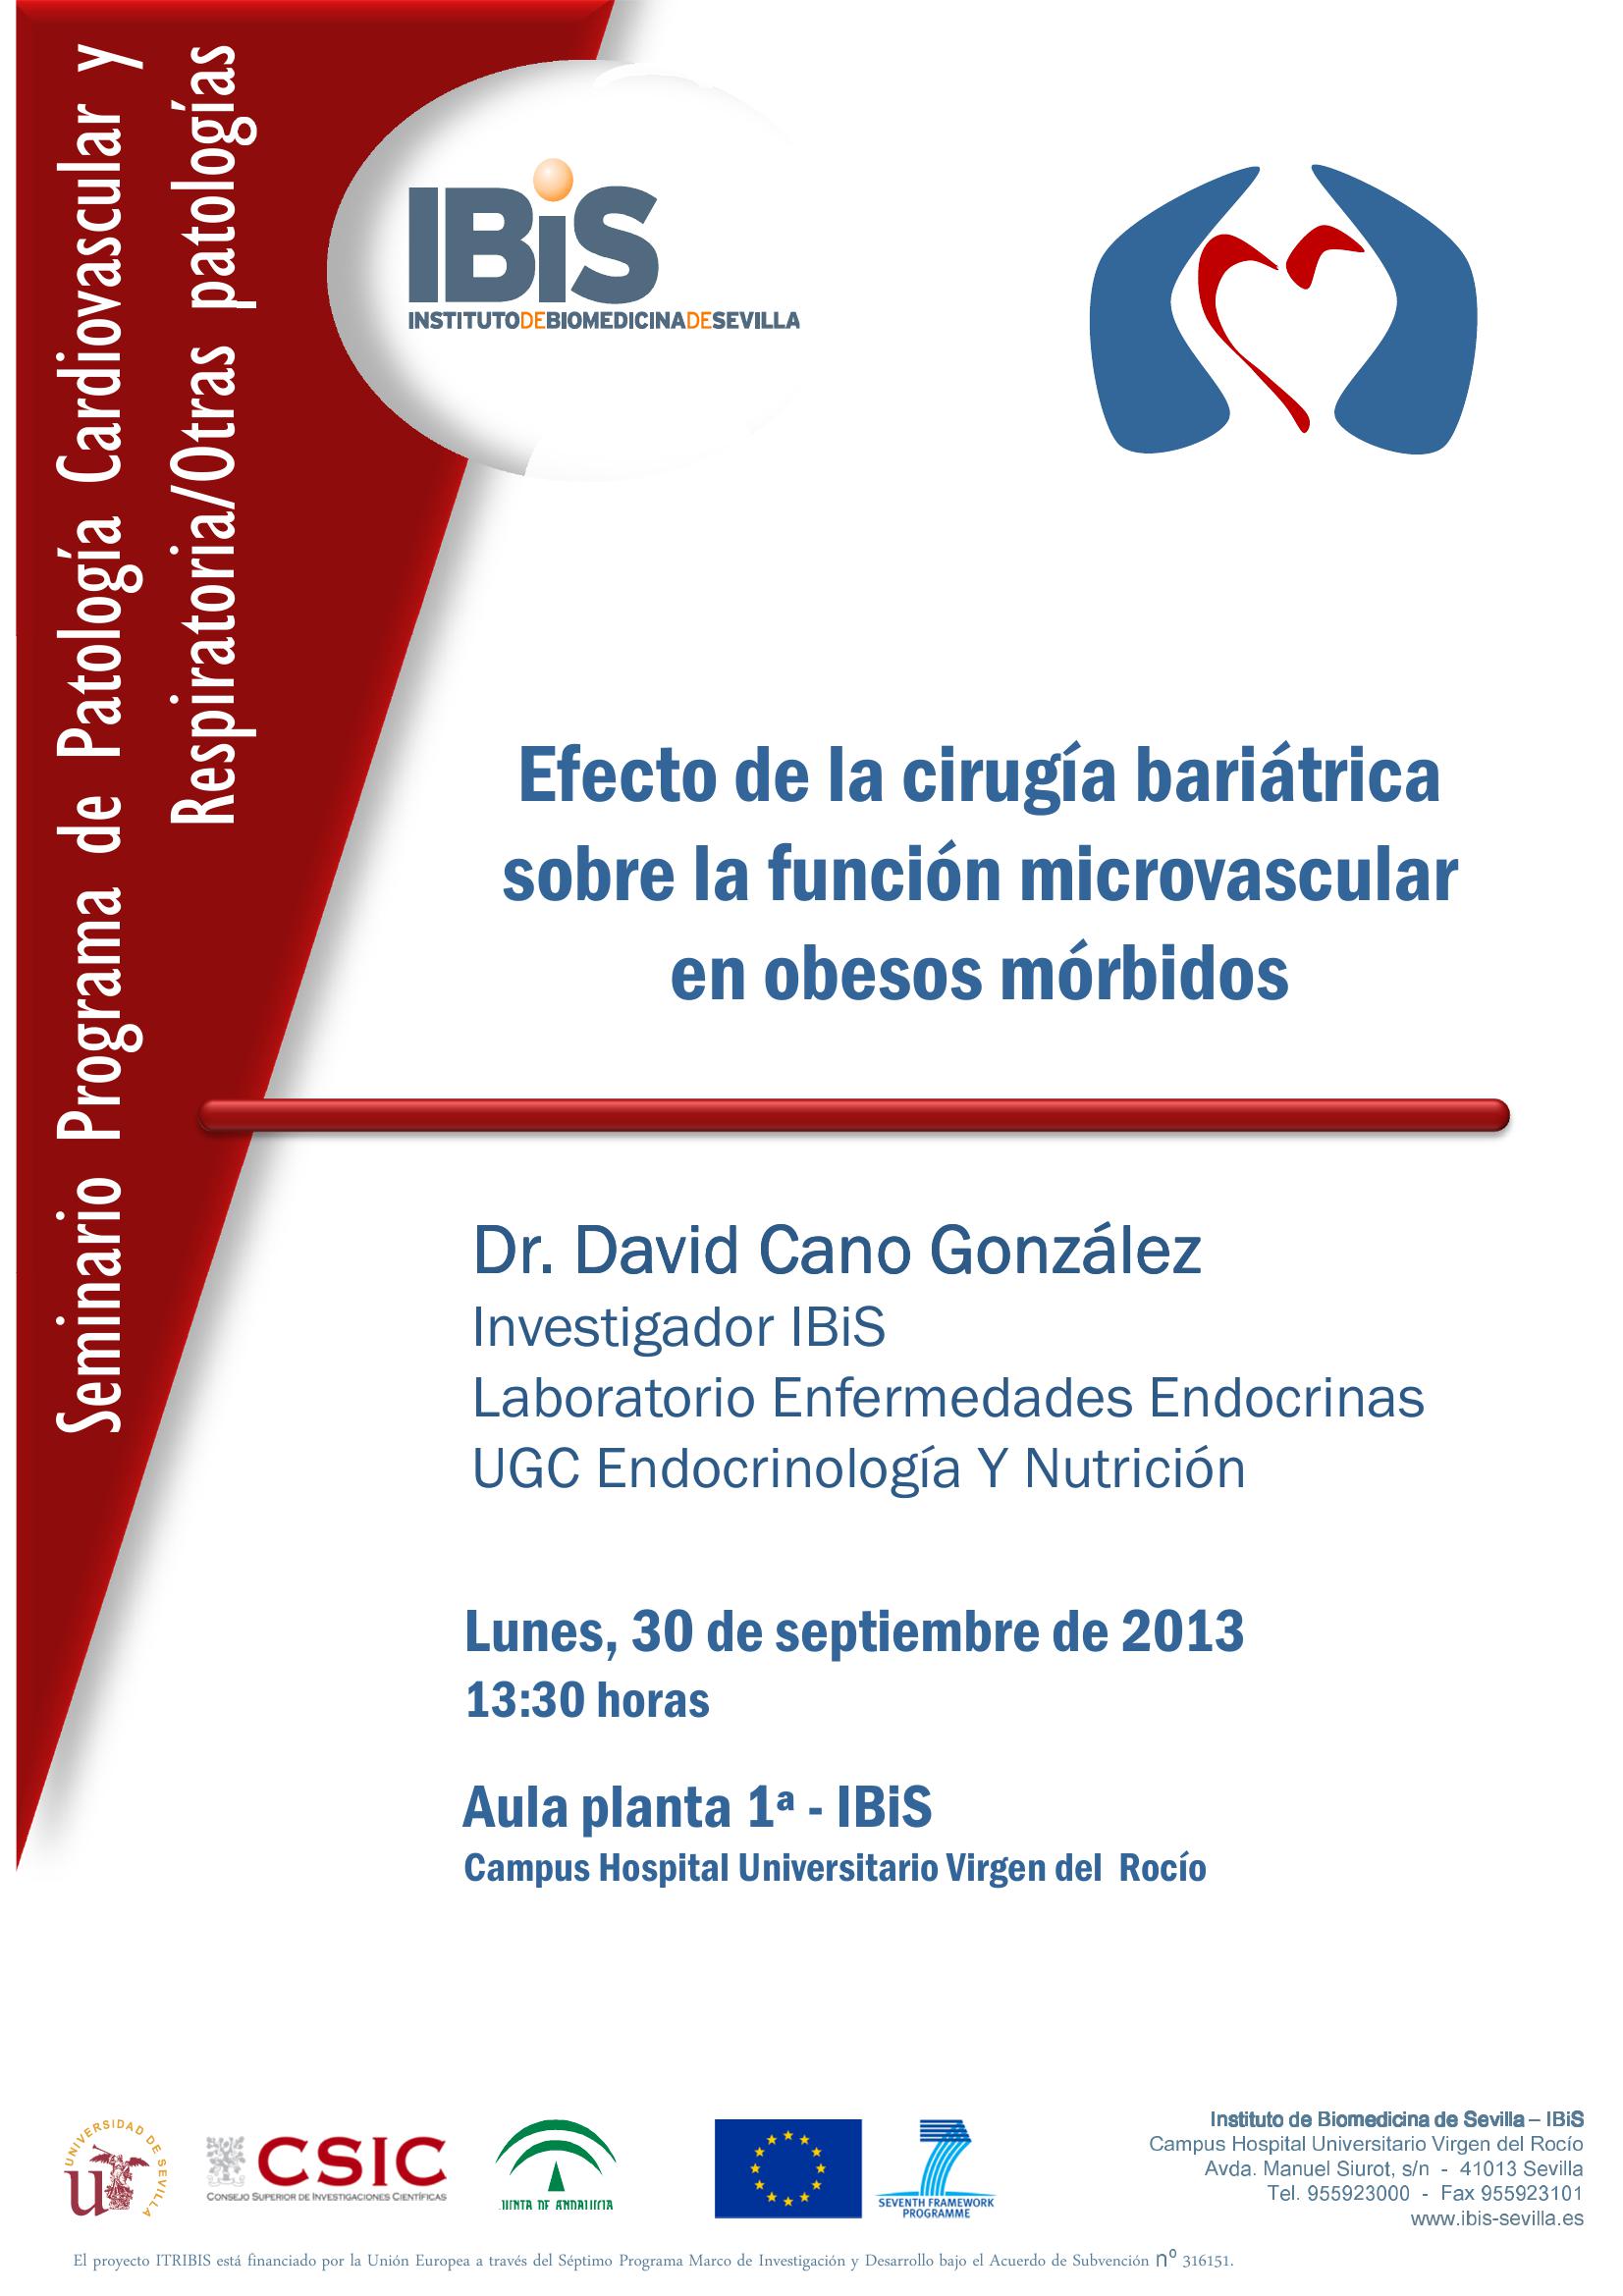 Poster: Efecto de la cirugía bariátrica sobre la función microvascular en obesos mórbidos